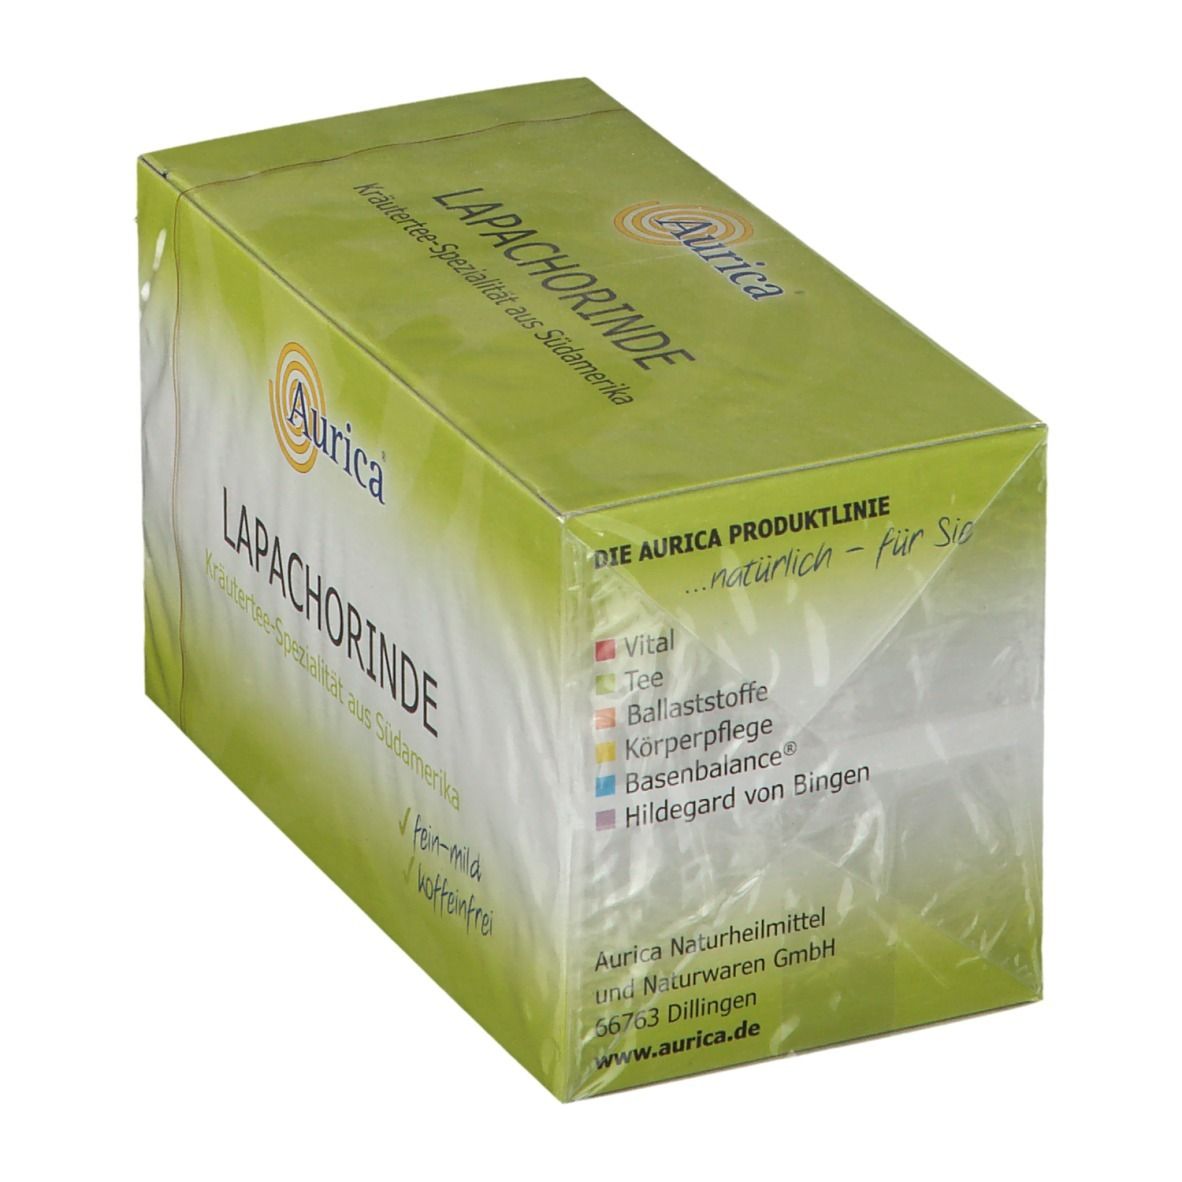 Aurica® Lapachorinde Tee Filterbeutel